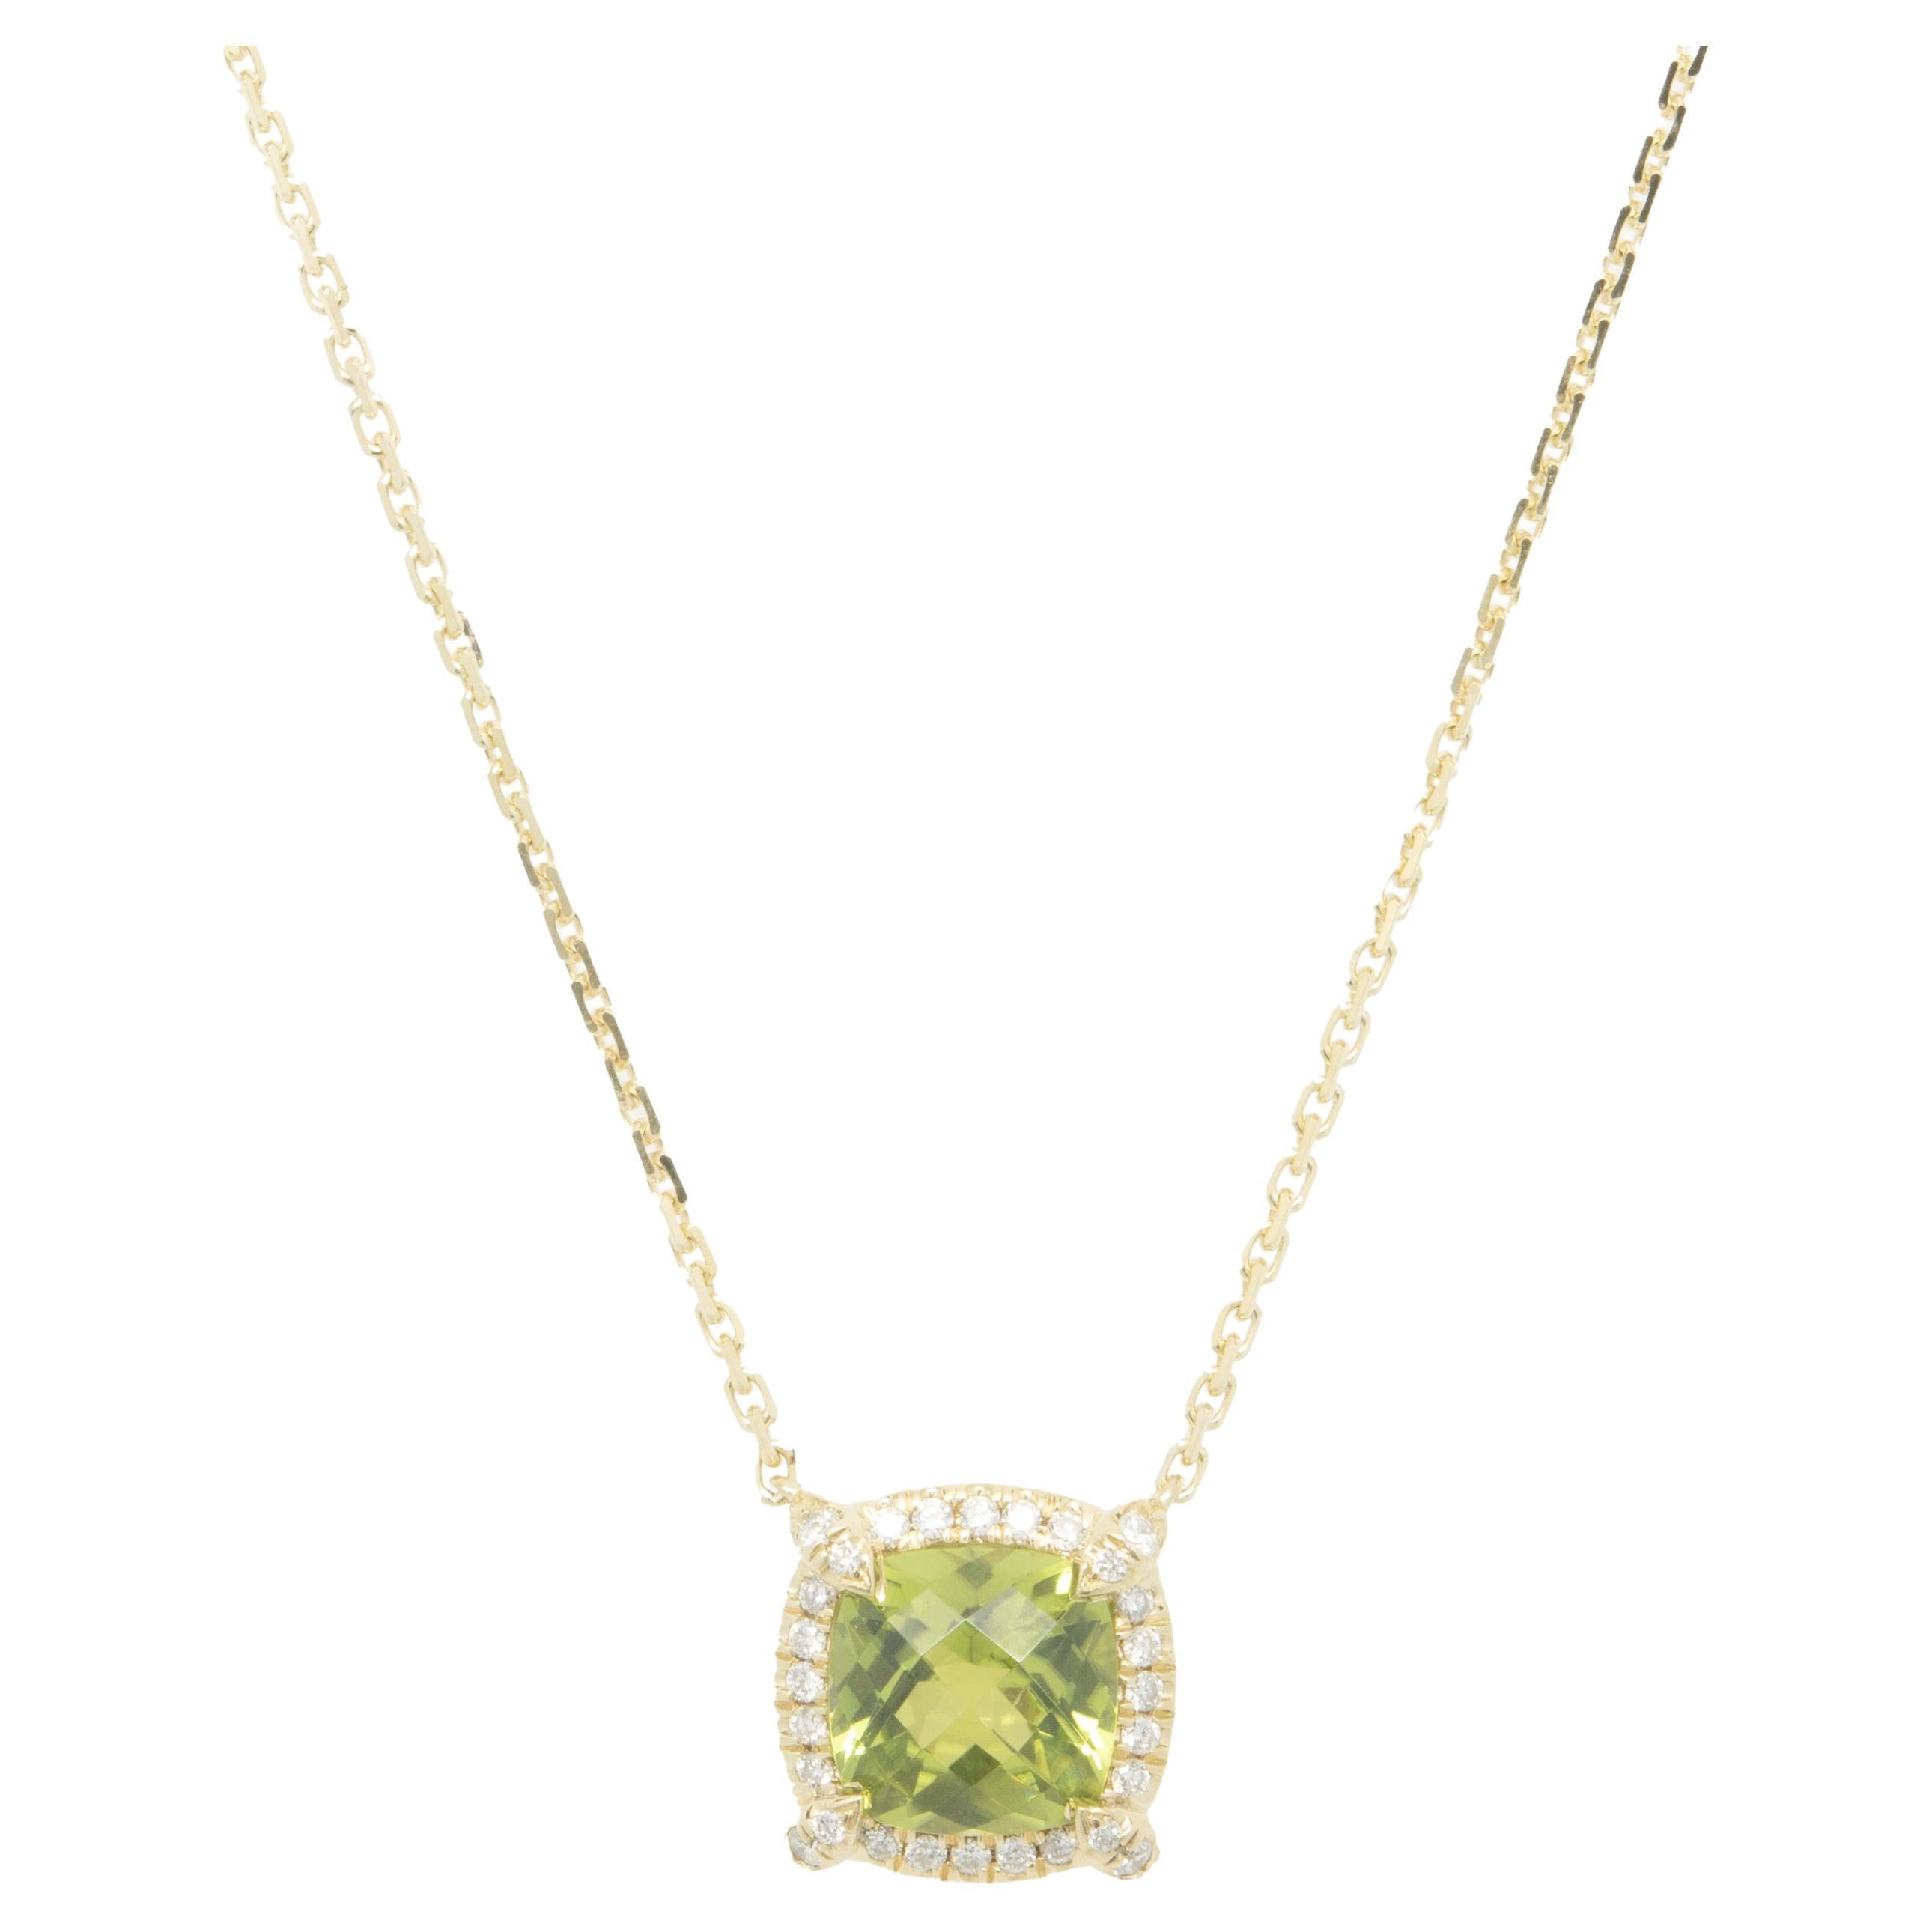 David Yurman 18 Karat Yellow Gold Peridot and Diamond Necklace